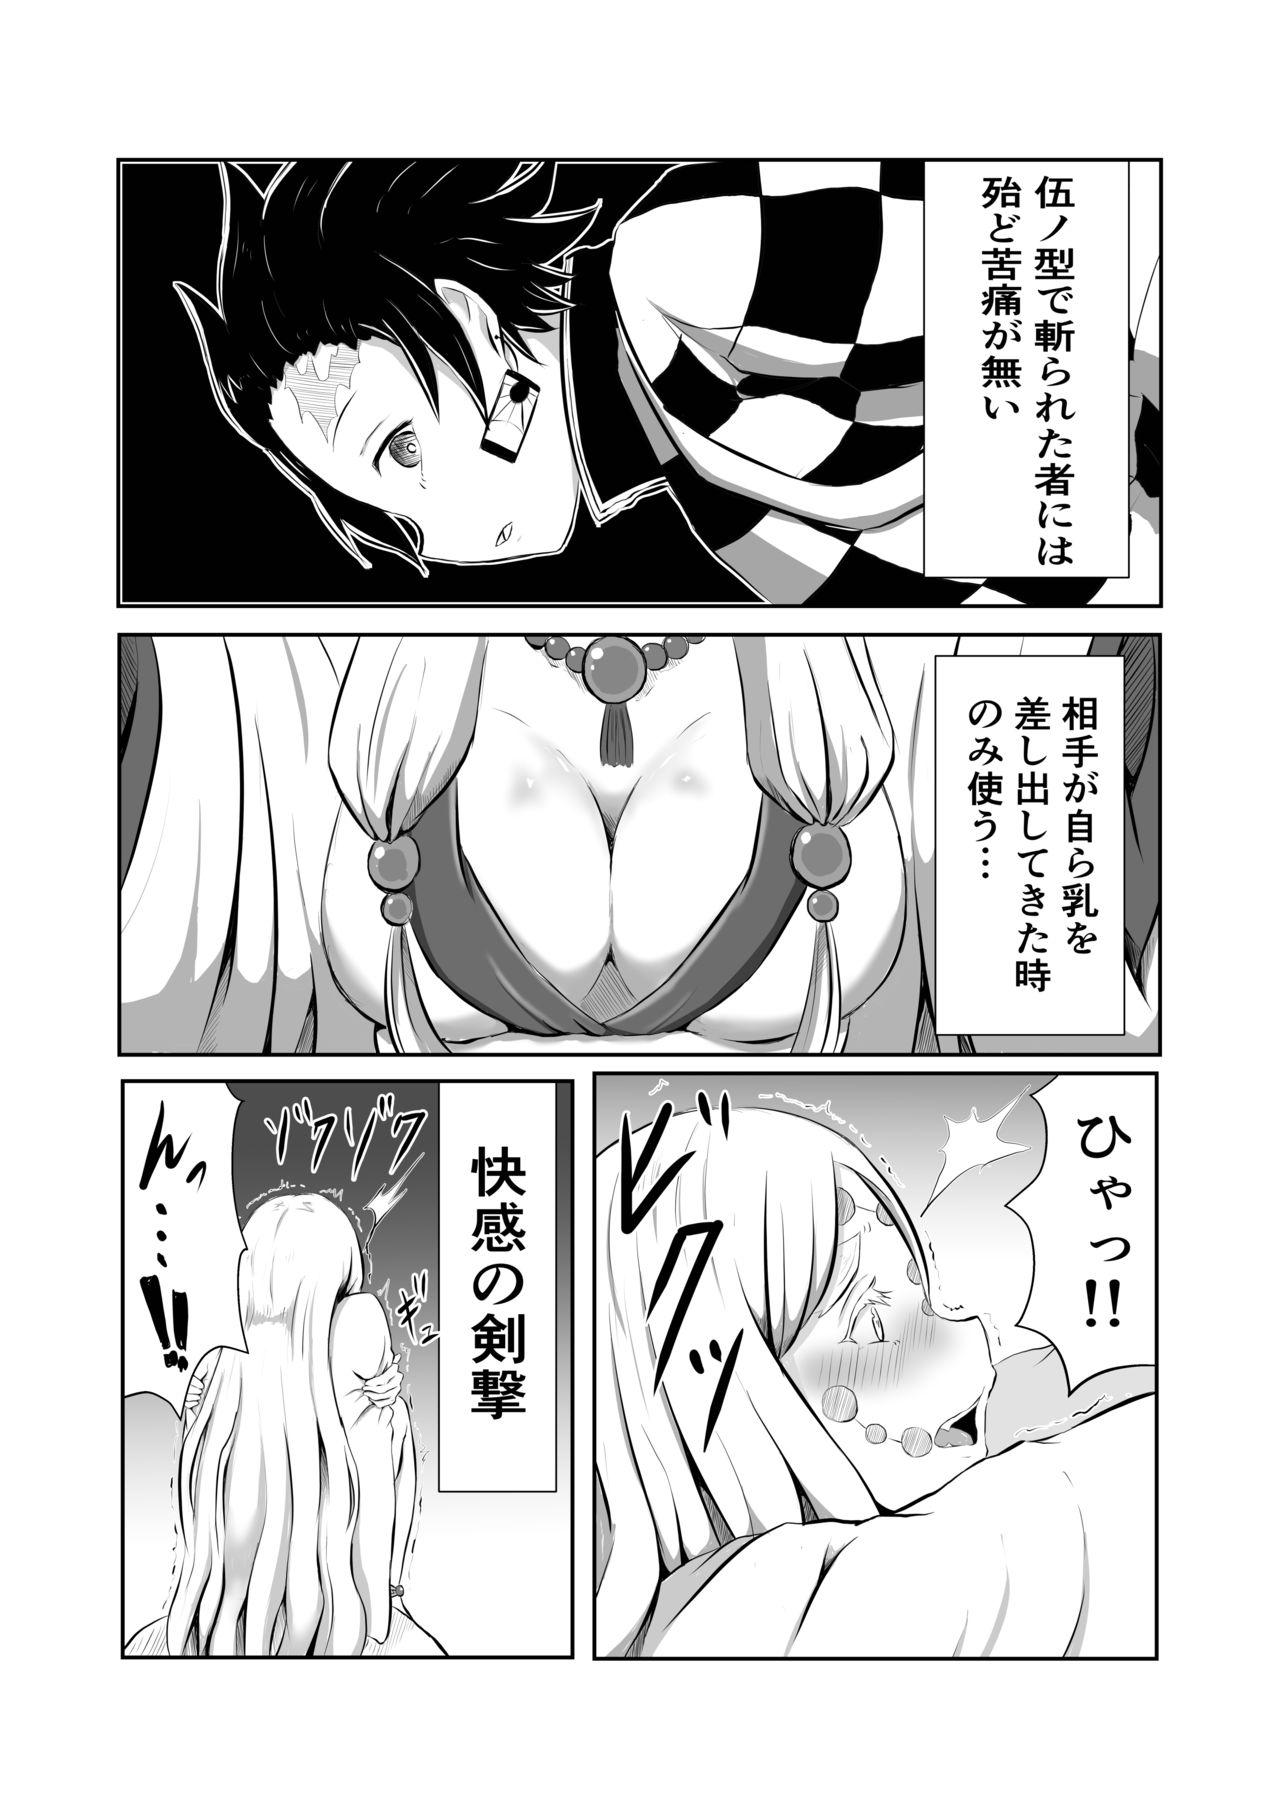 Teenfuns Hinokami Sex. - Kimetsu no yaiba | demon slayer Couples Fucking - Page 4